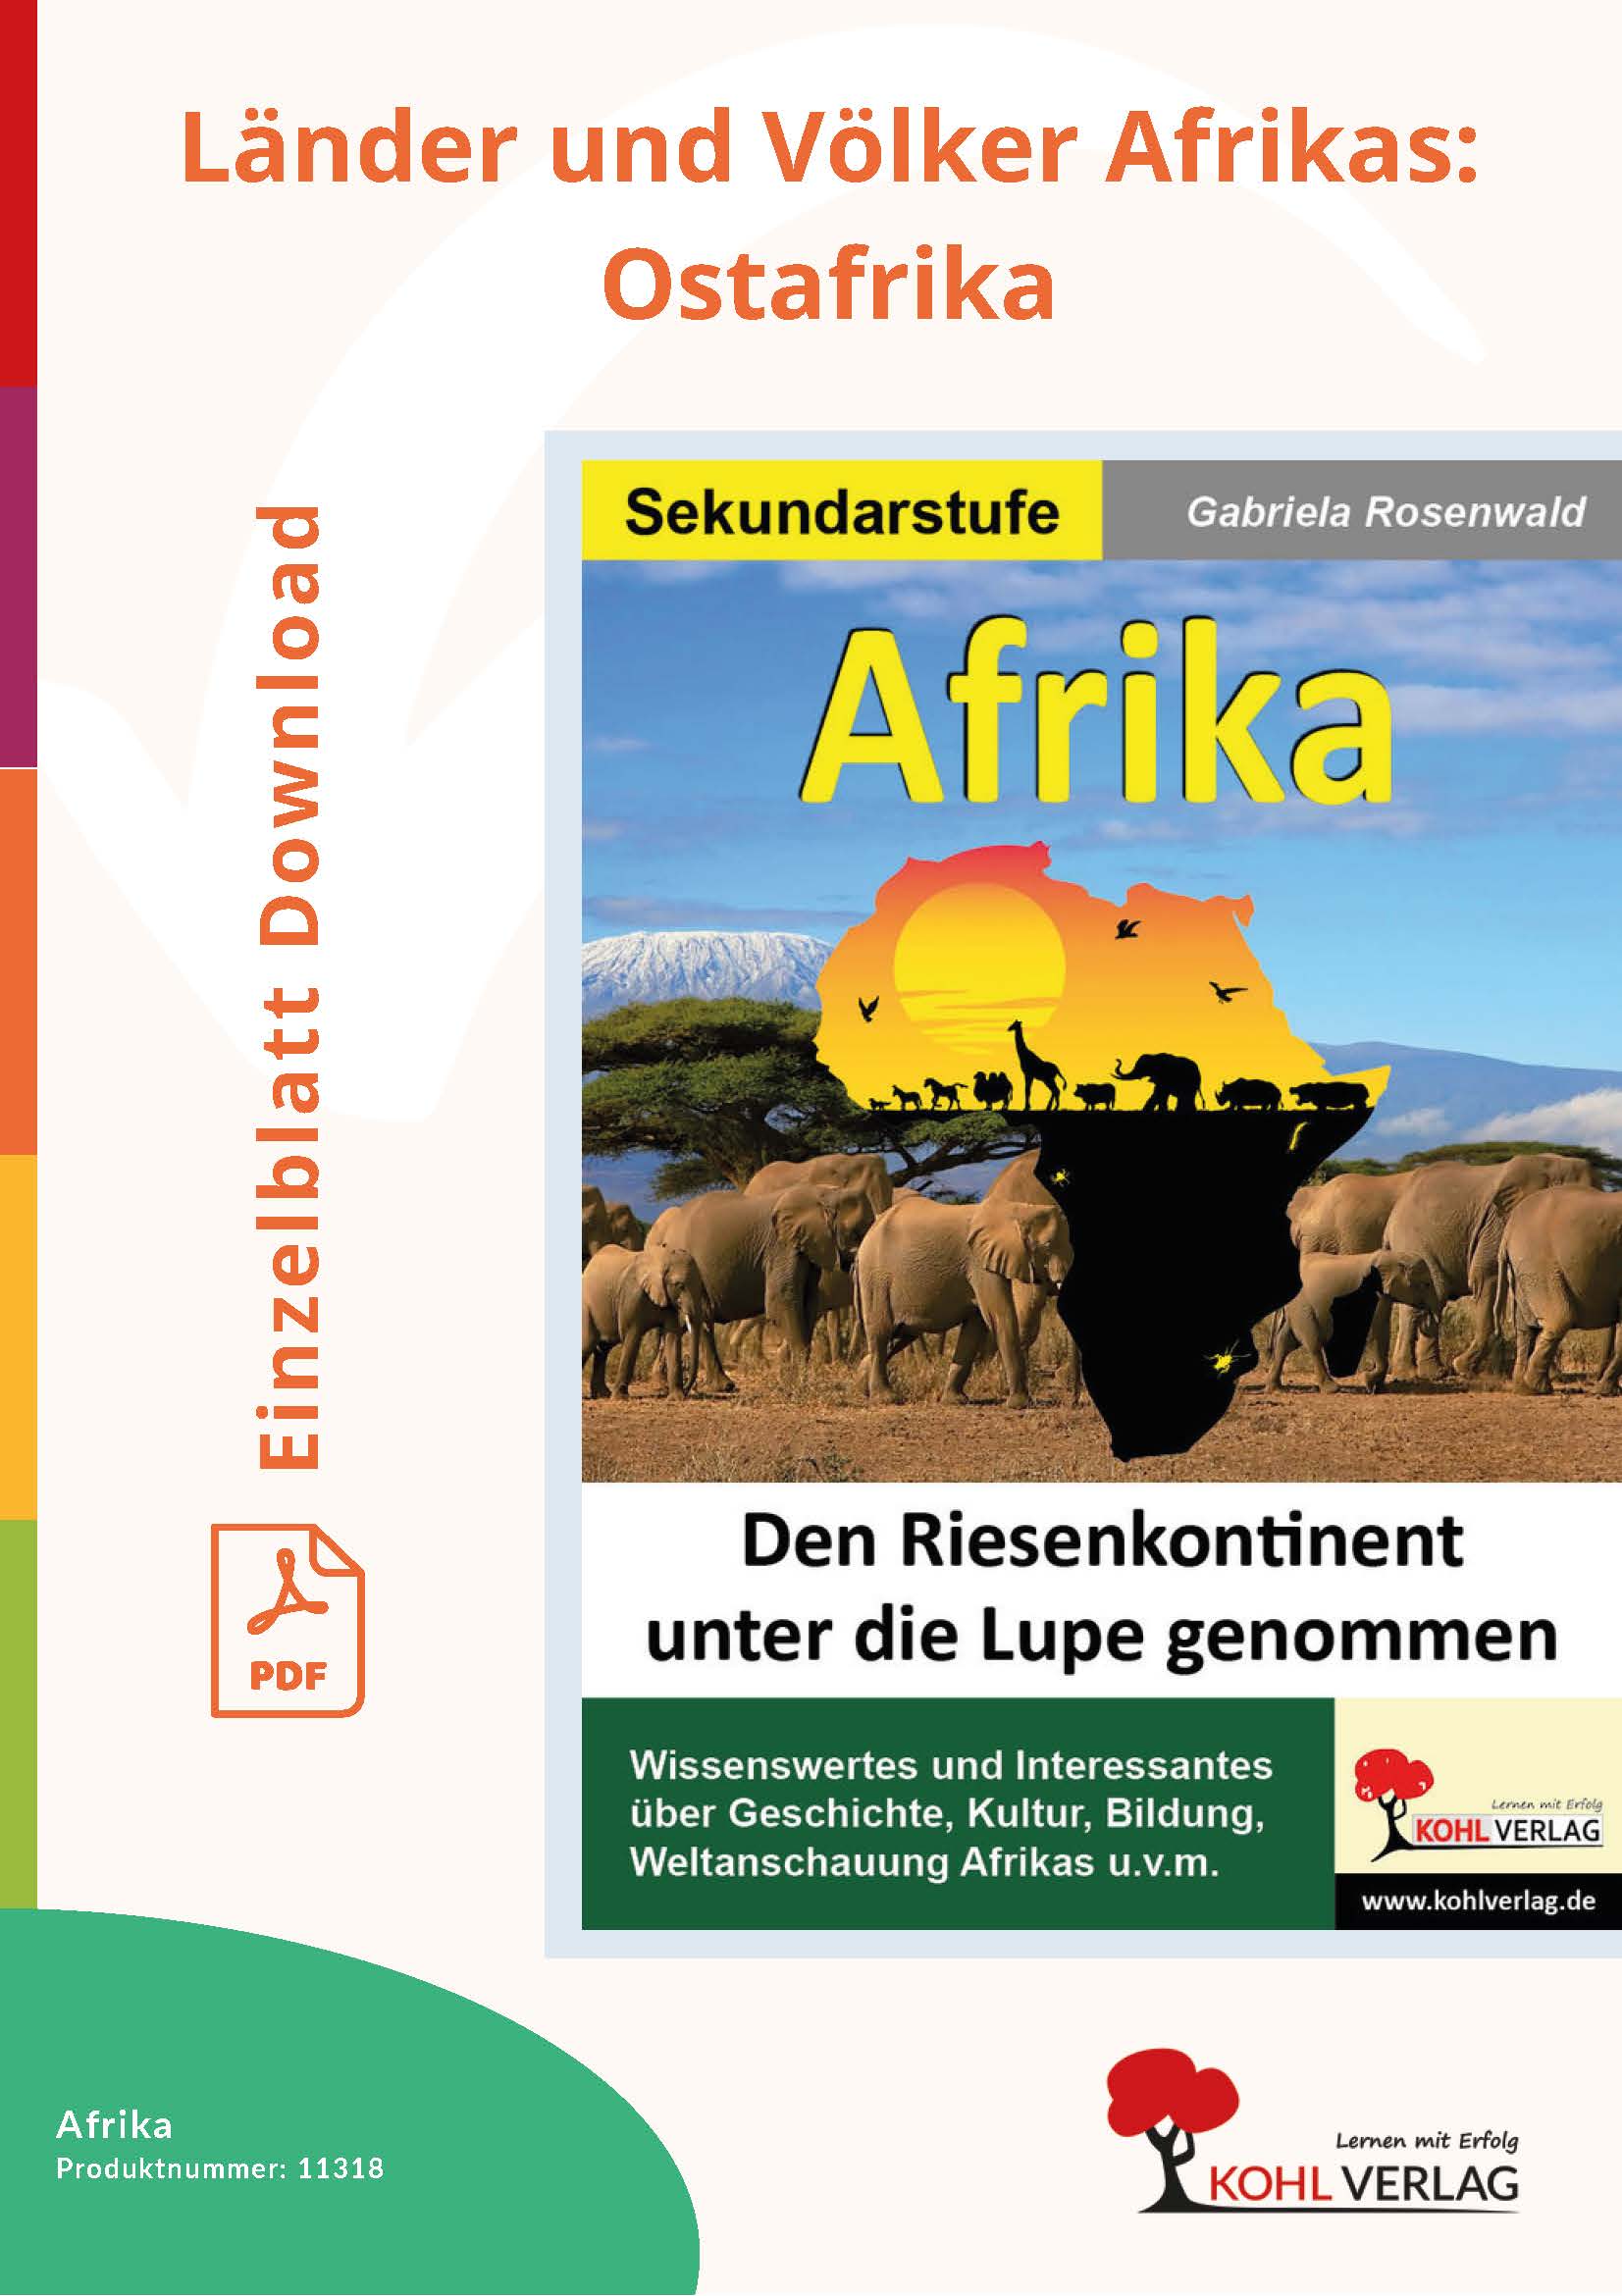 Afrika - Länder und Völker Afrikas: Ostafrika